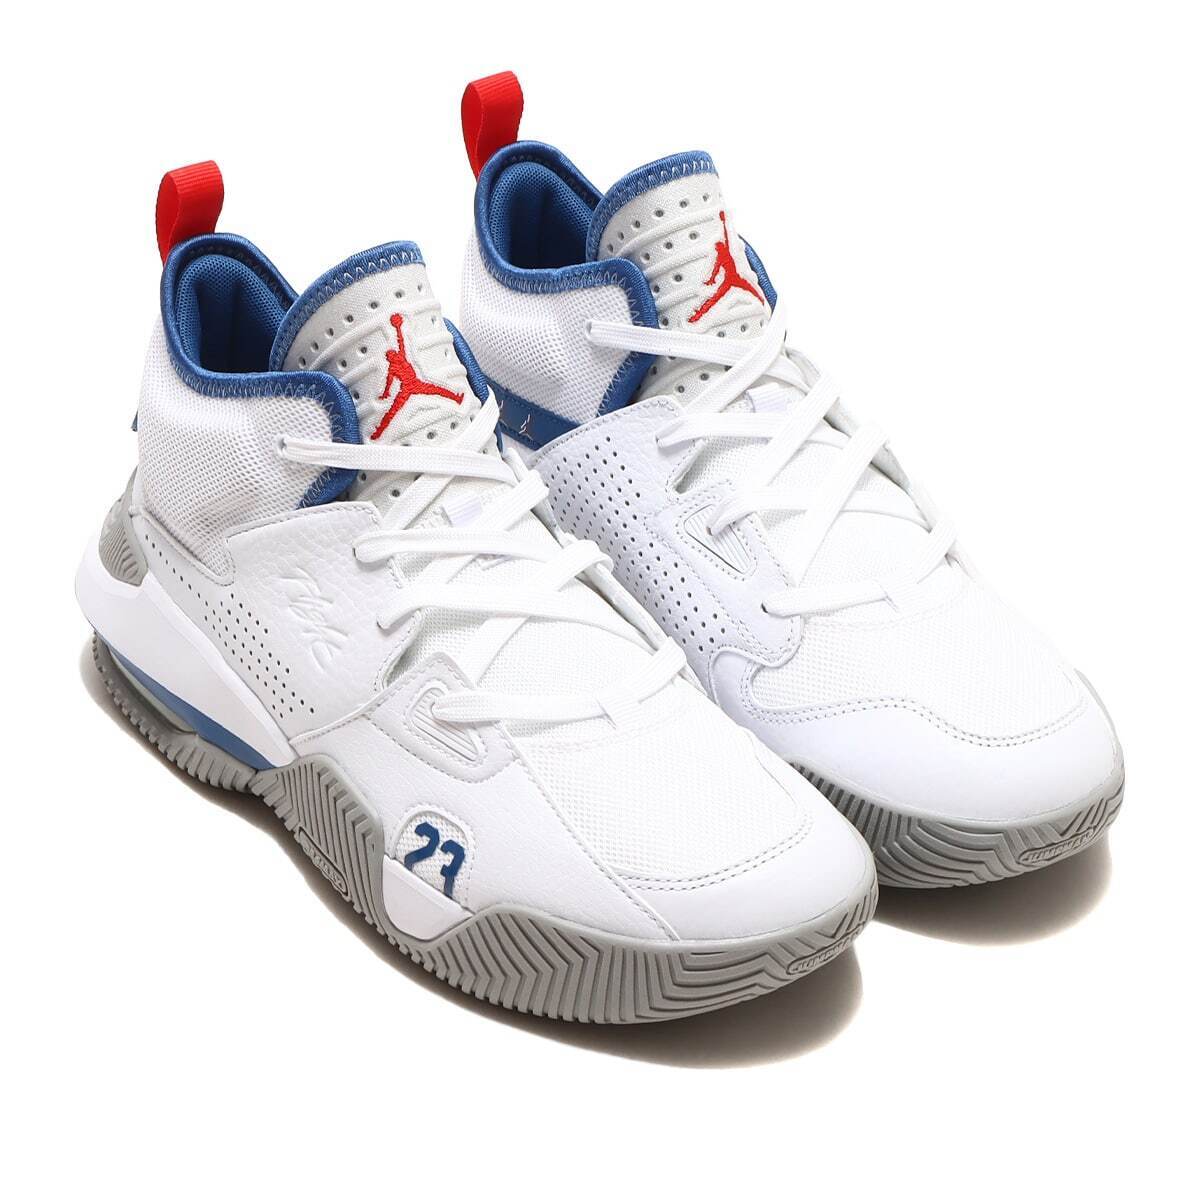 Fancy Nike Jordan Stay Loyal 2 White True Blue Mid Top Basketball Sneakers Trainers DS on eBay